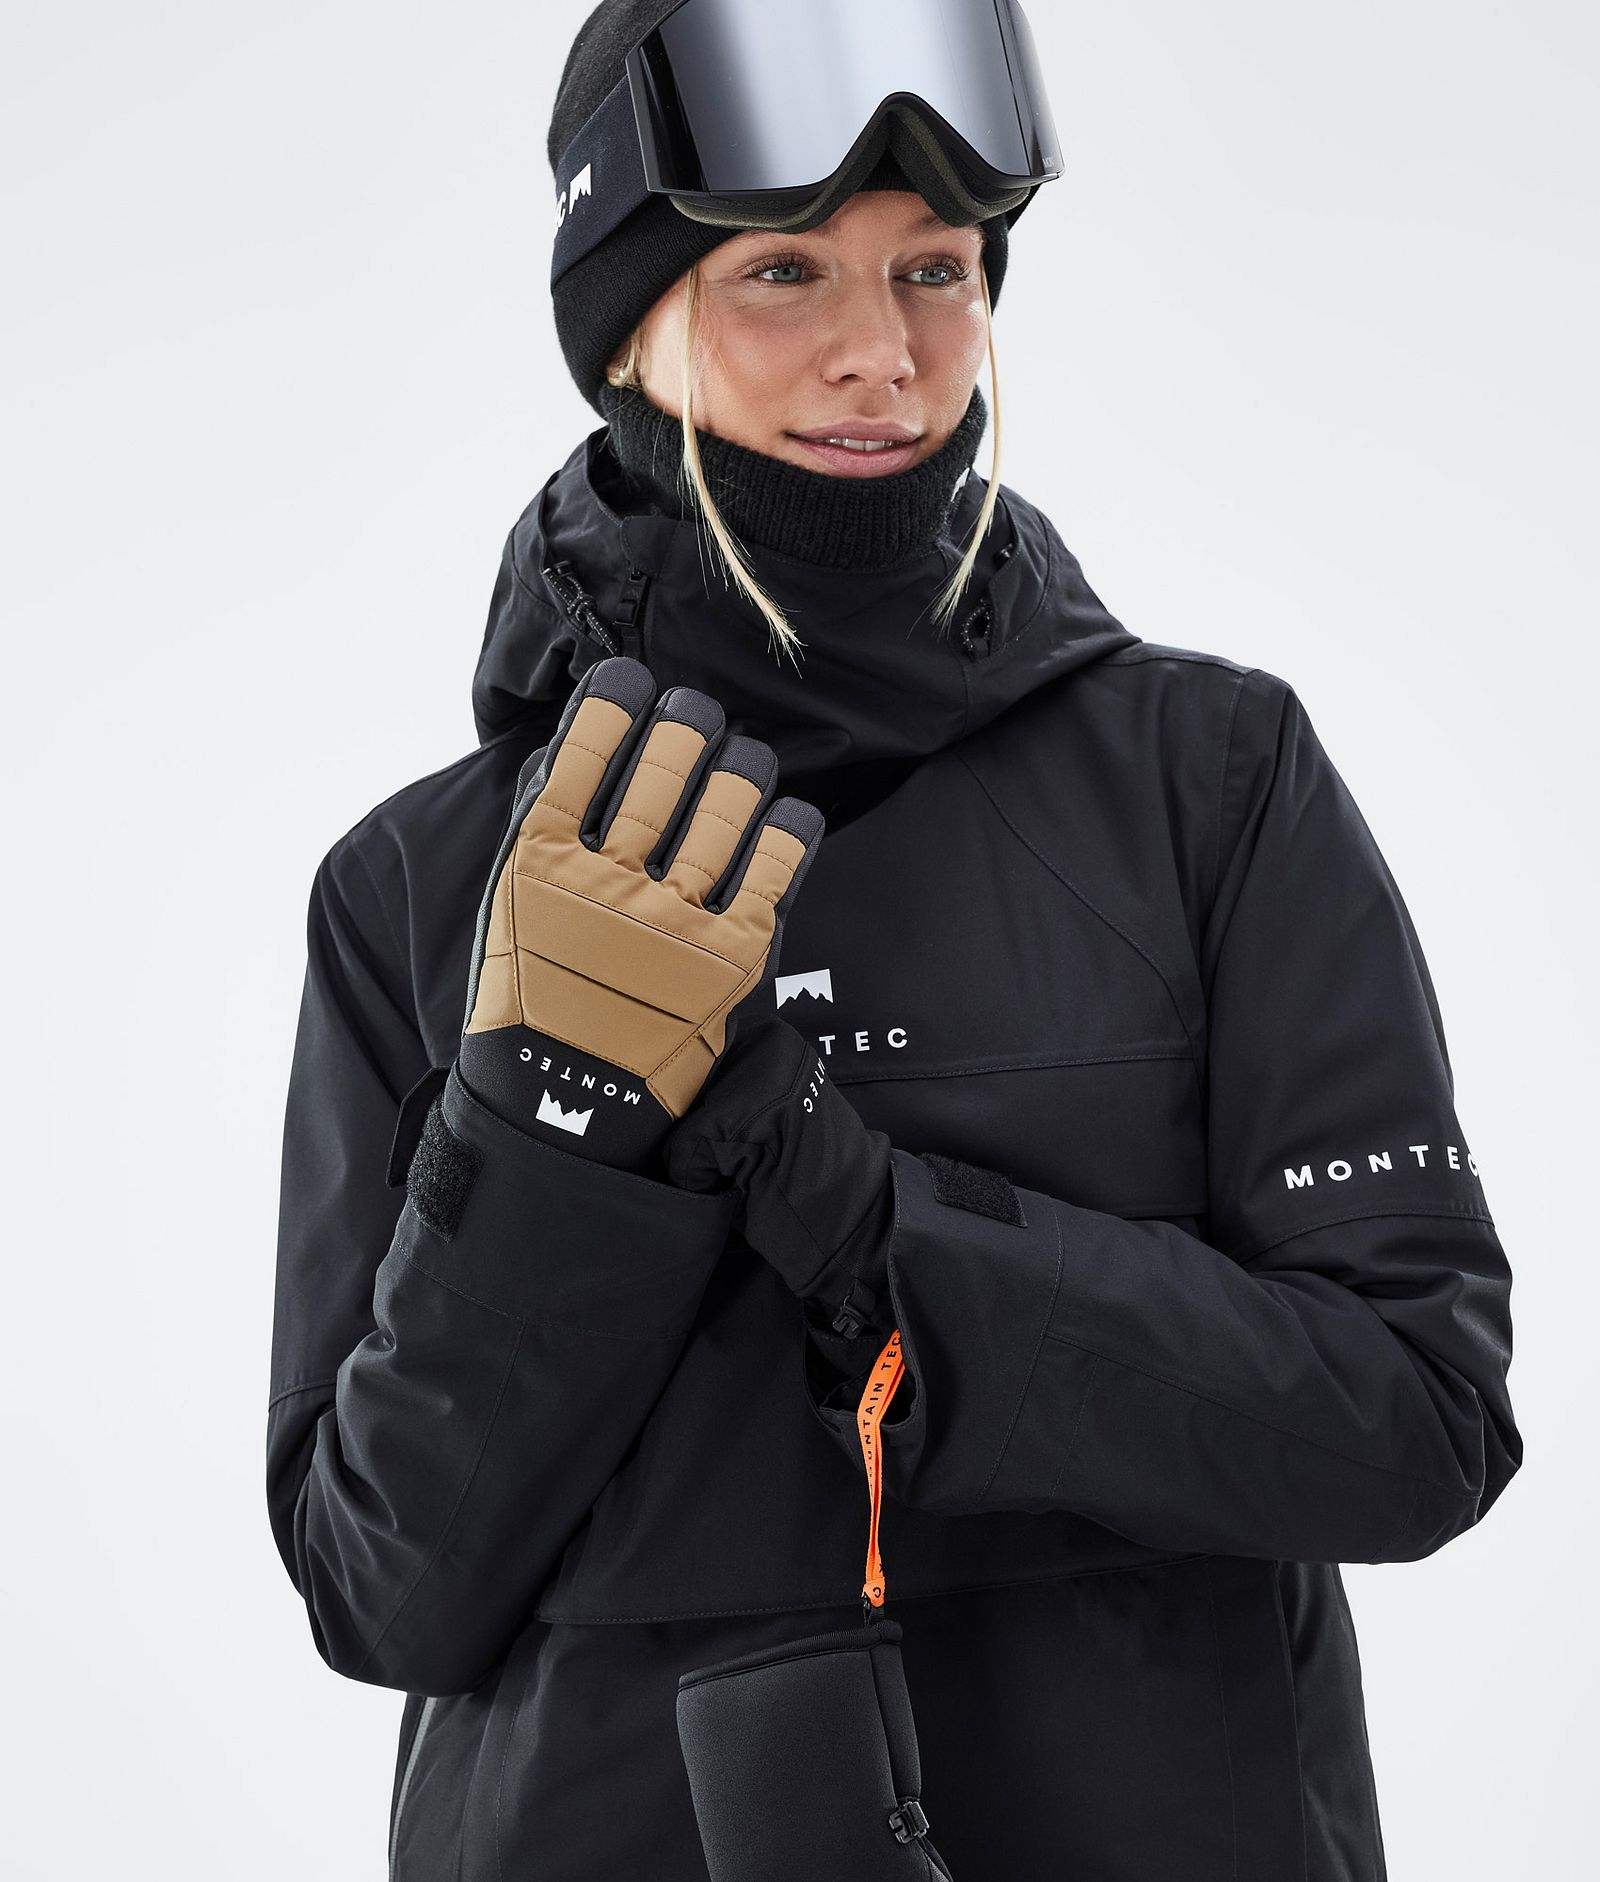 Kilo 2022 Ski Gloves Gold, Image 3 of 5